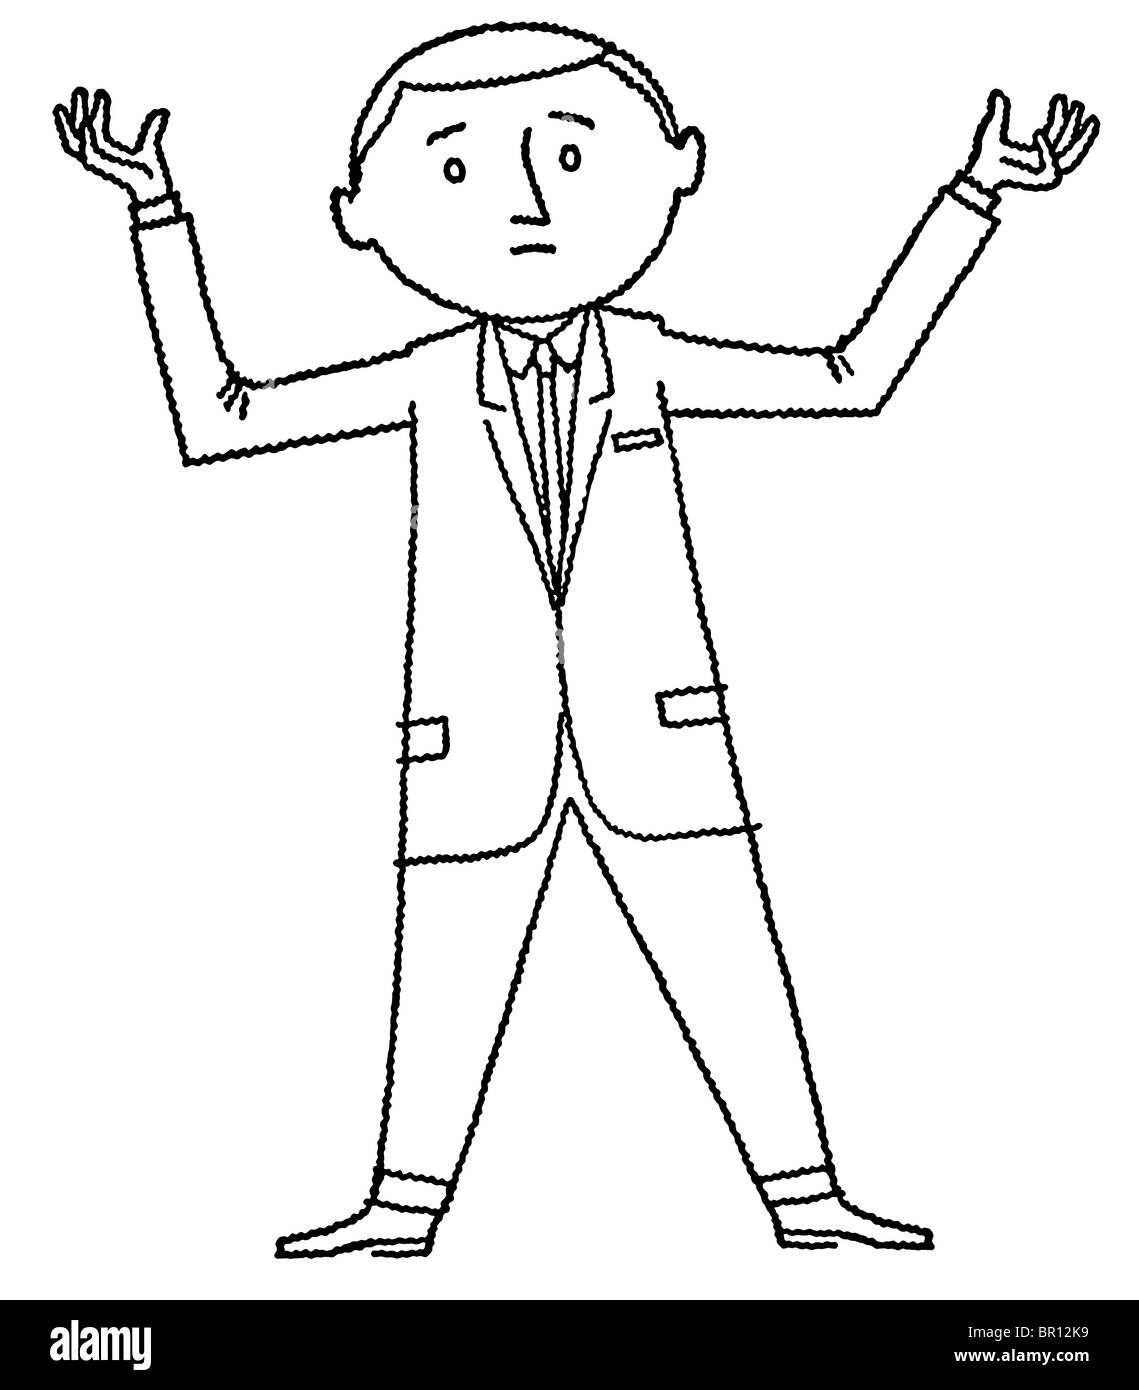 Une version noir et blanc d'un cartoon style dessin d'un homme sur le bord de l'abandon de Banque D'Images